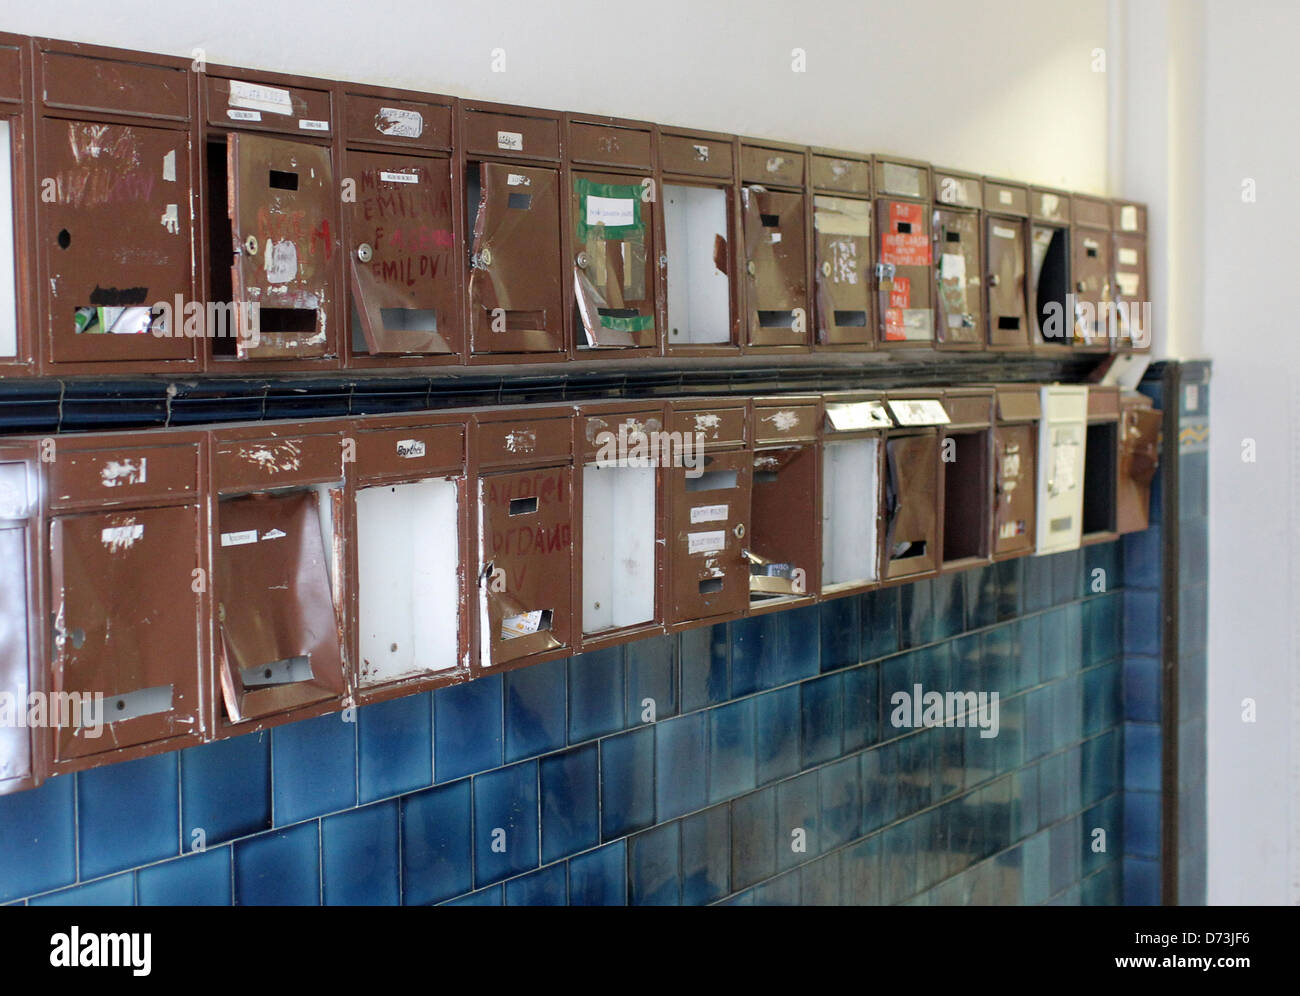 Kiel, Allemagne, a été détruit dans l'embrasure d'une des boîtes aux lettres Banque D'Images